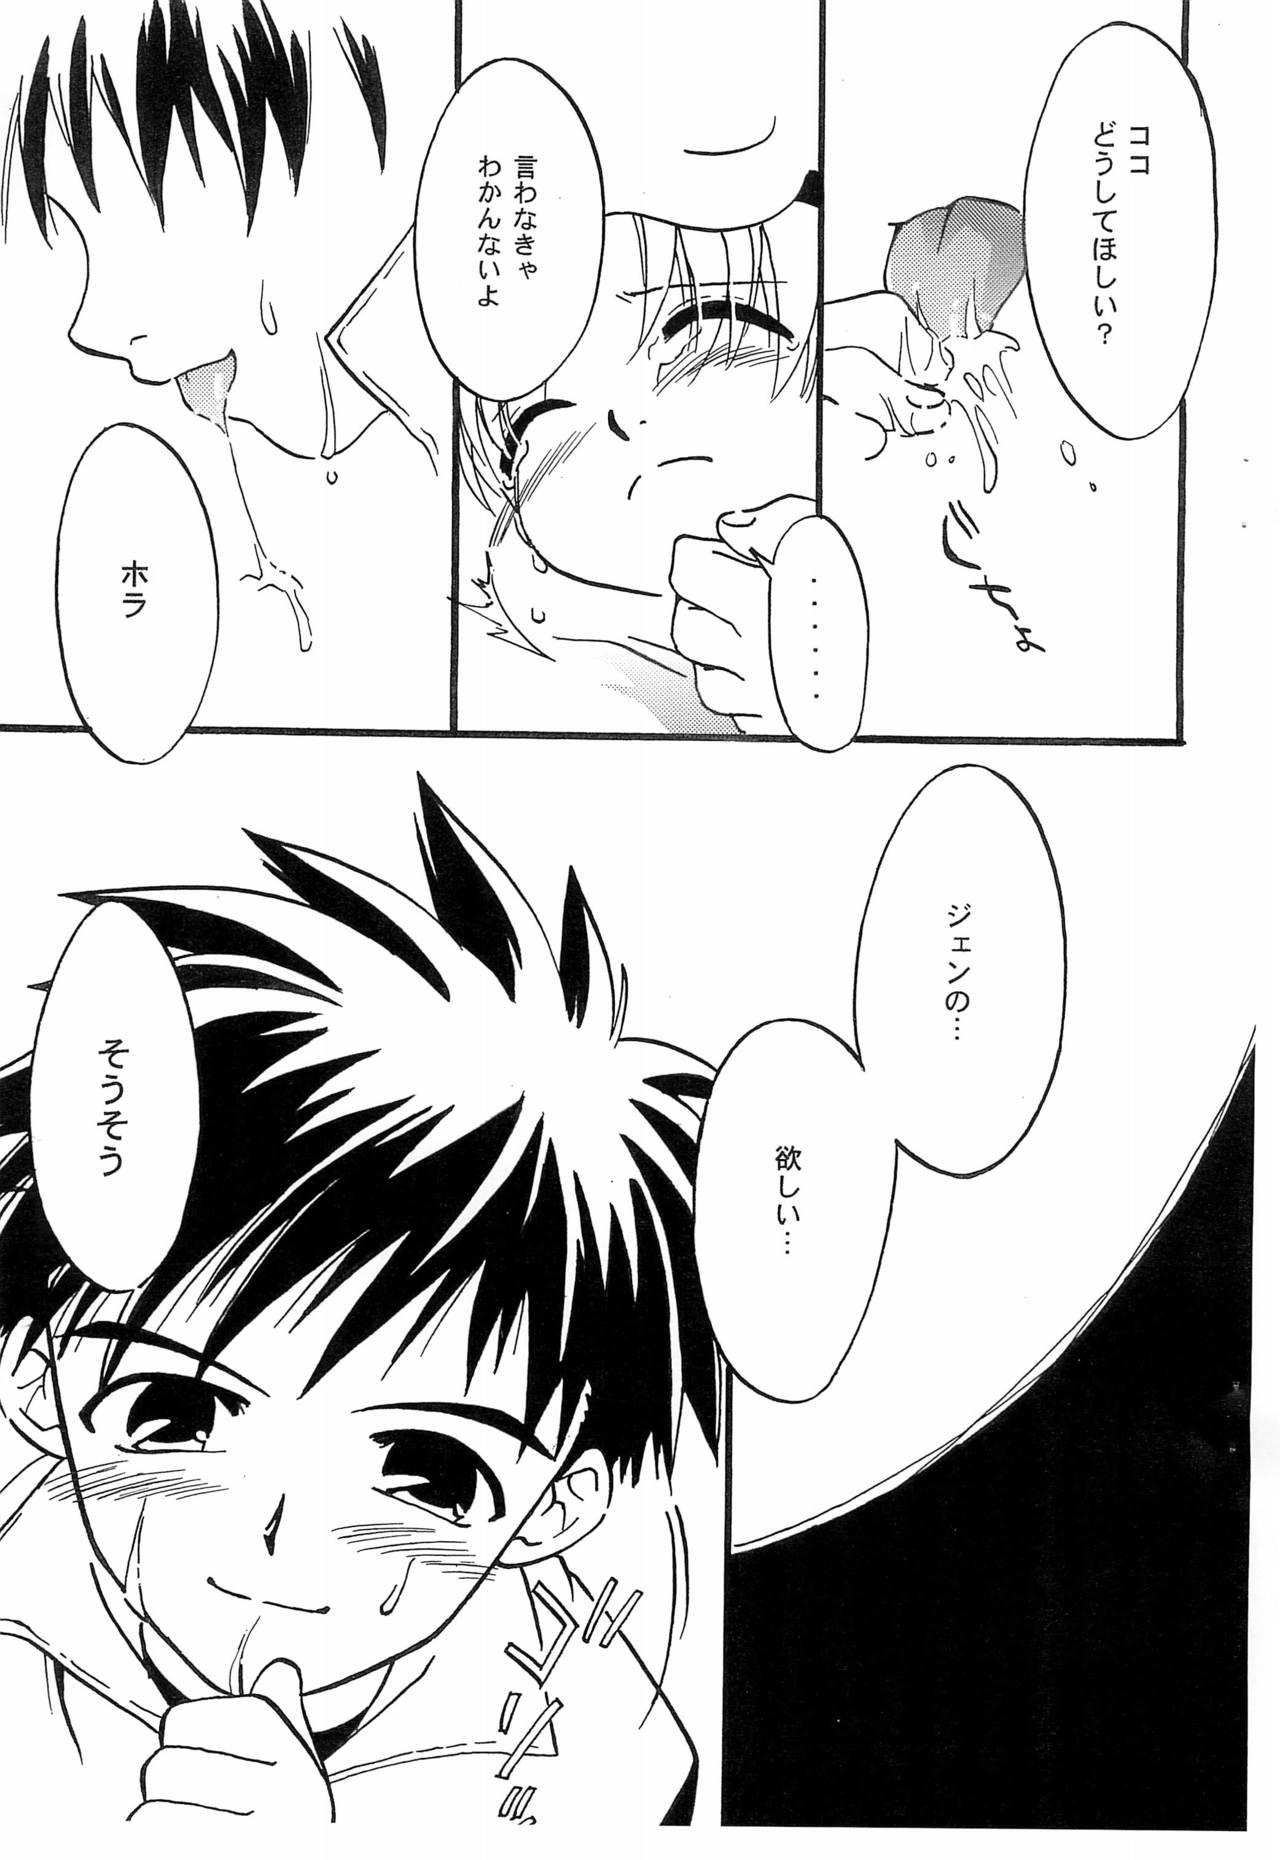 Perfect Tanoshii Natsuyasumi - Digimon tamers Adolescente - Page 11